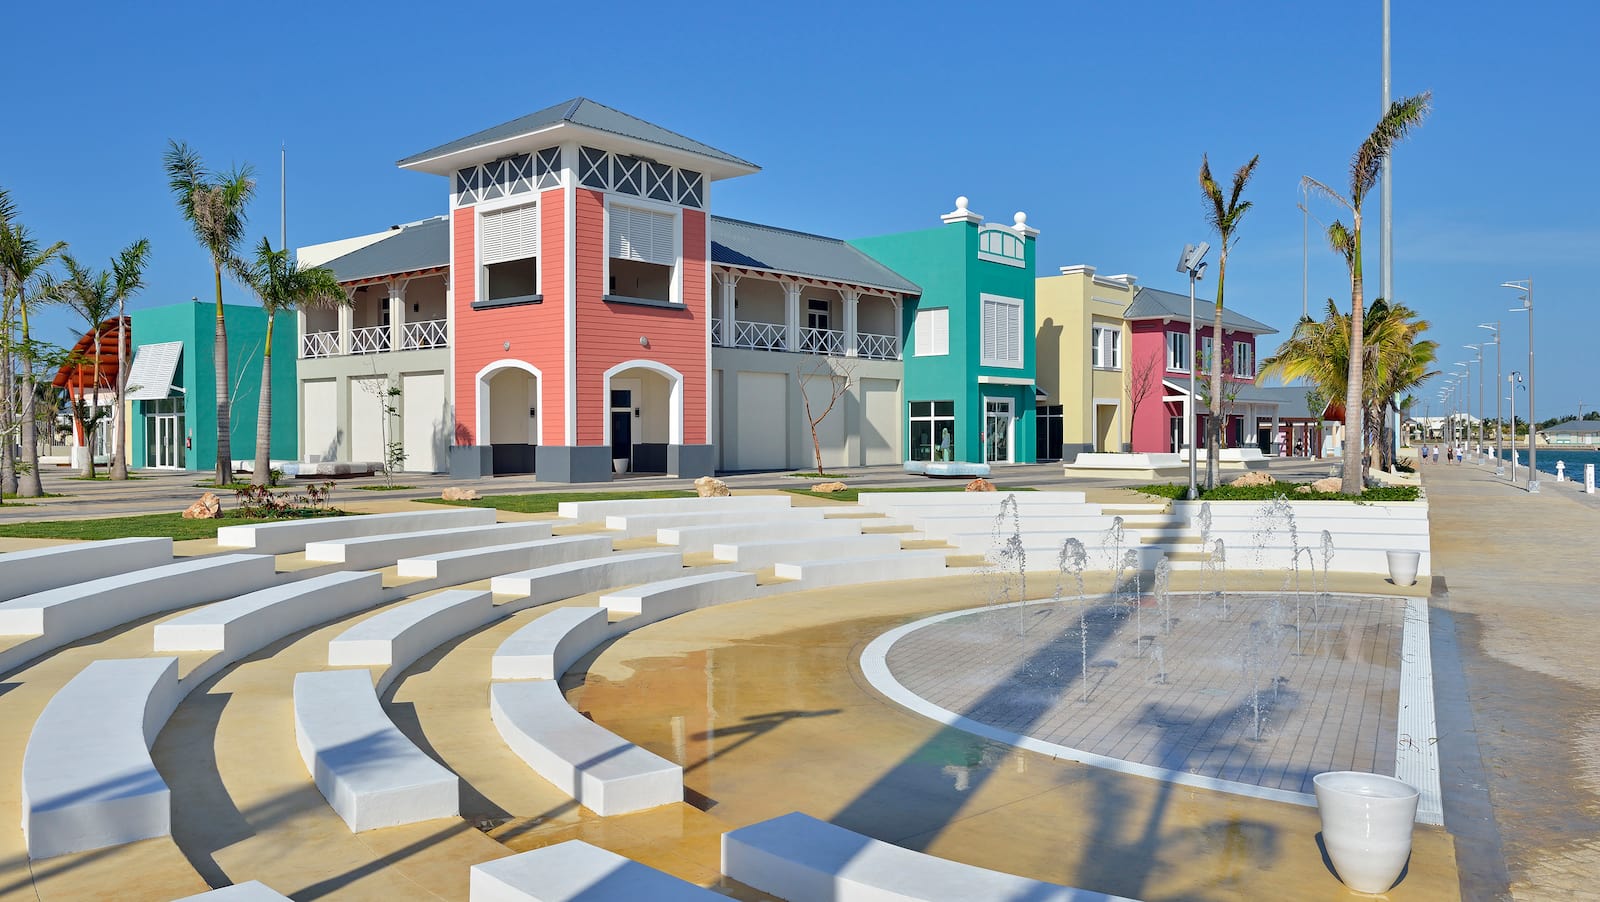 Hotel Meliá Marina Varadero - Cuba - Foro Caribe: Cuba, Jamaica